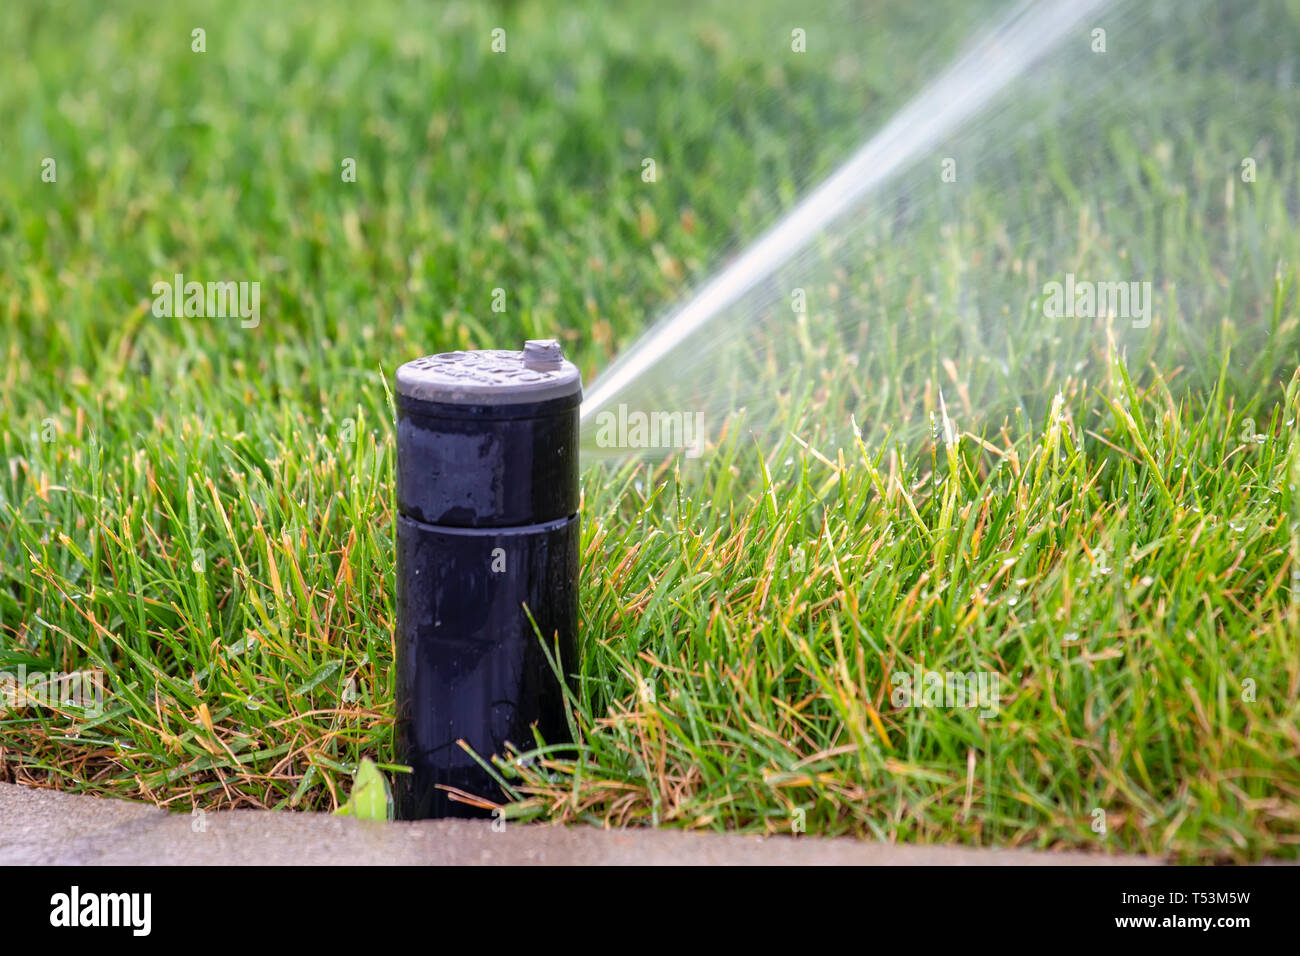 Rasen Sprinkler dispergieren Wasser auf Gras. Gras sprinkler Sprühwasser  auf Rasen Stockfotografie - Alamy